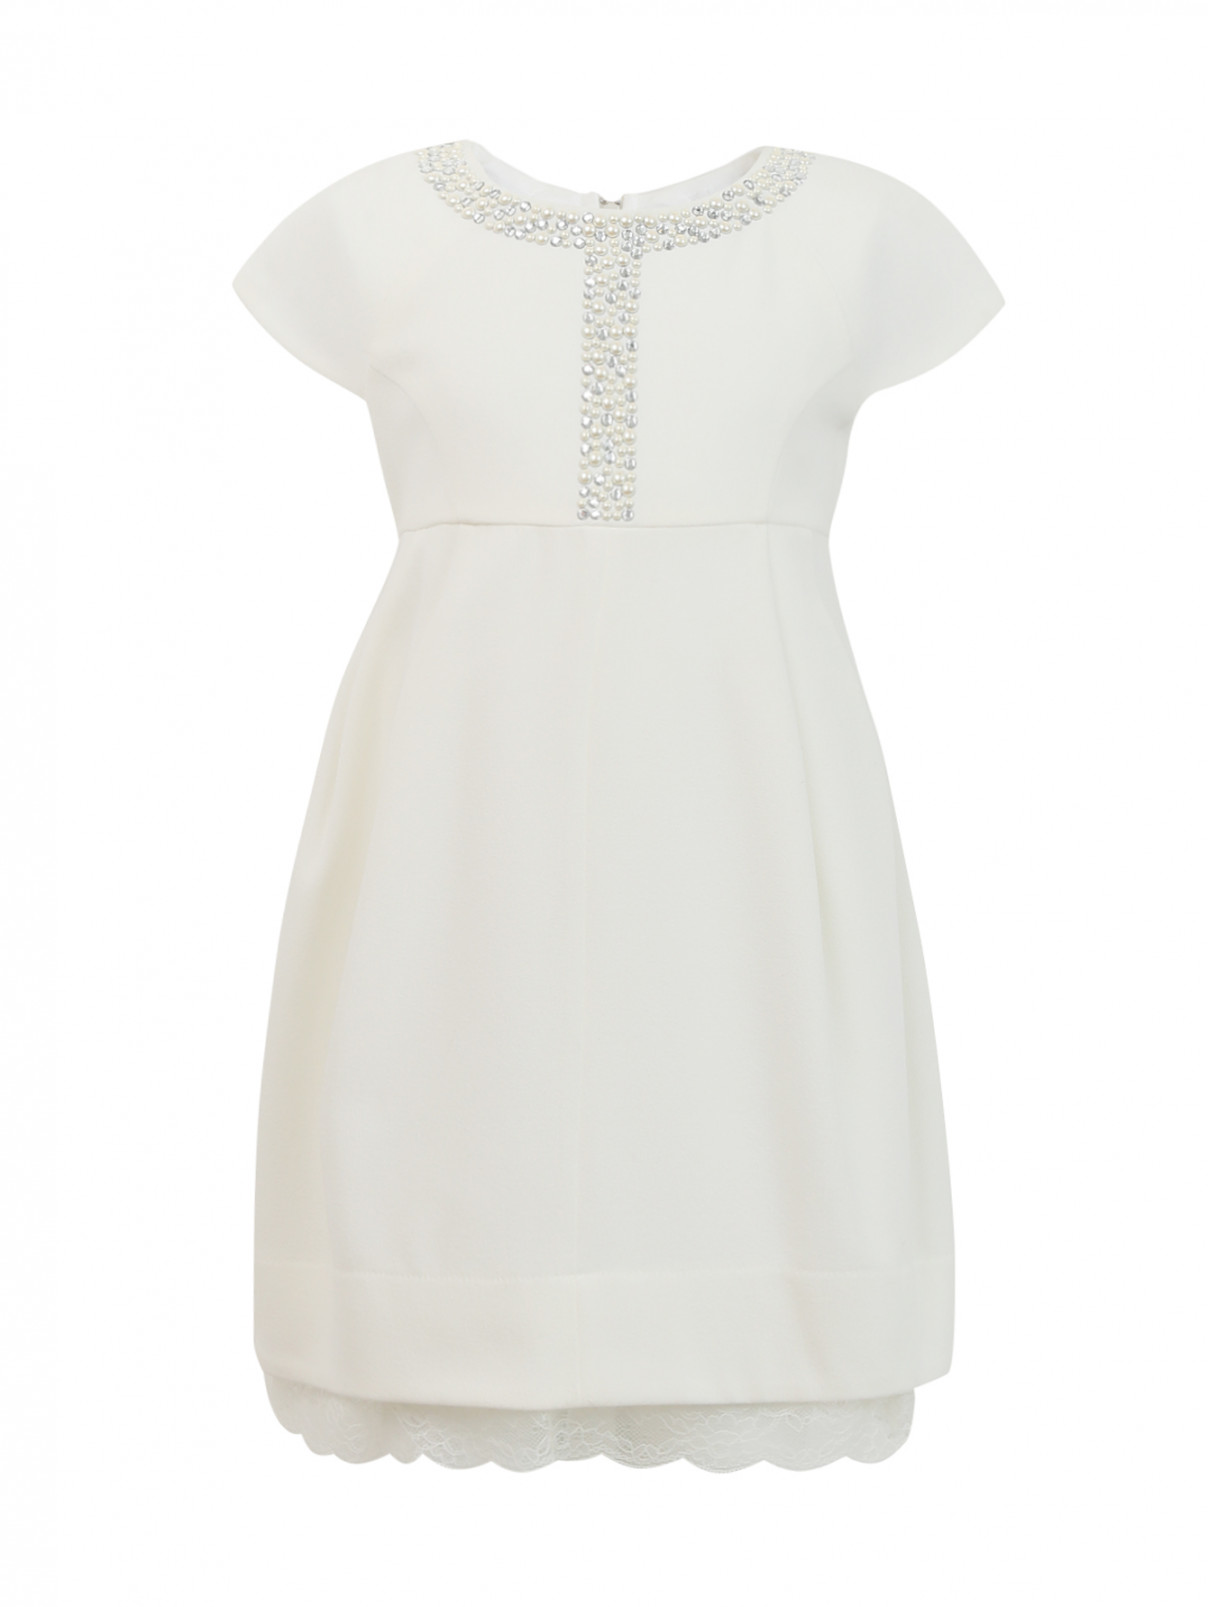 Платье декорированное бусинами MiMiSol  –  Общий вид  – Цвет:  Белый